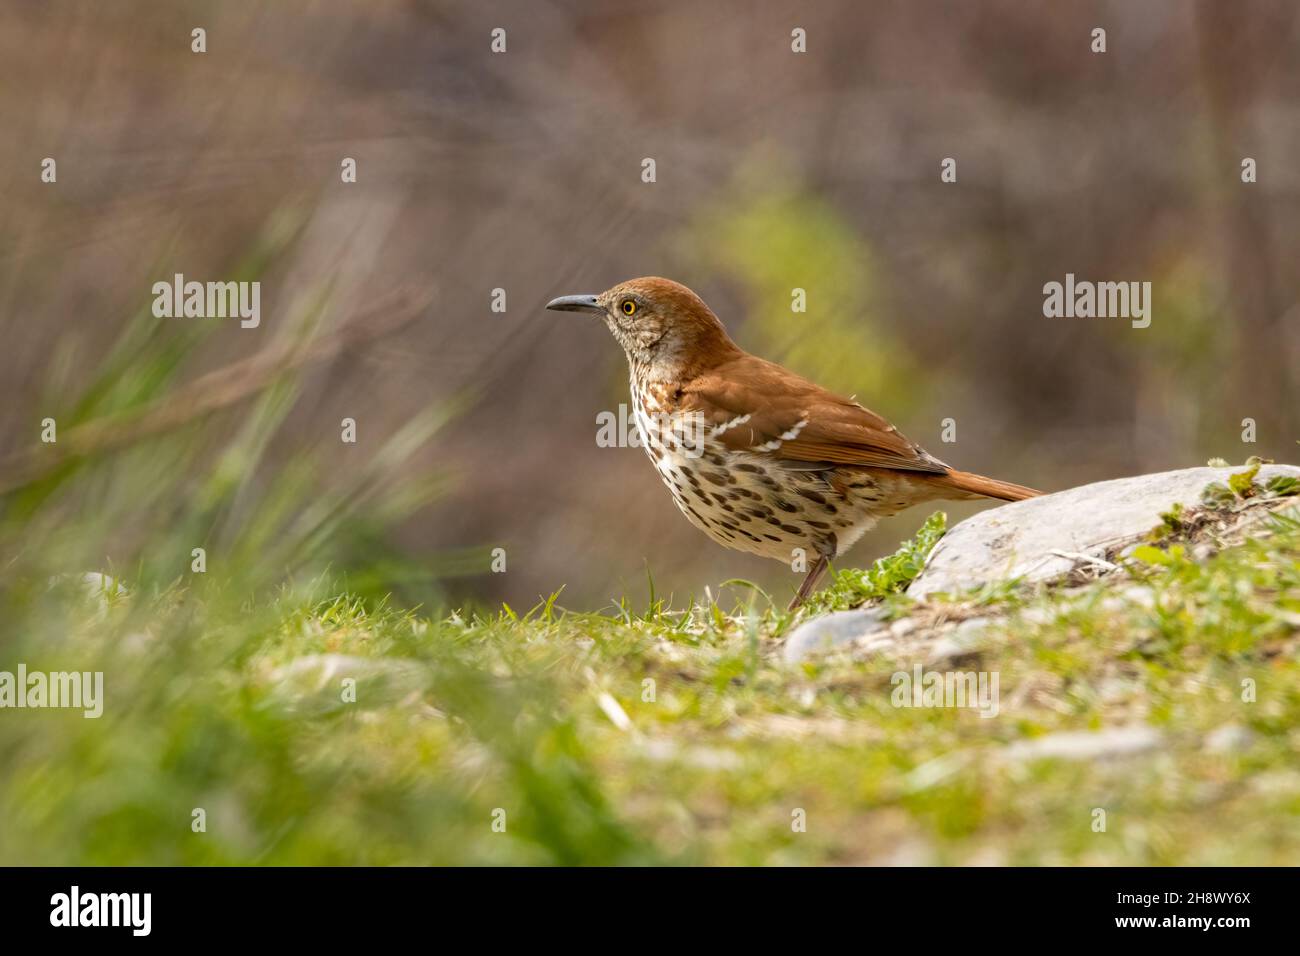 Piccolo uccello marrone del rasher sul terreno in una mattinata di primavera Foto Stock